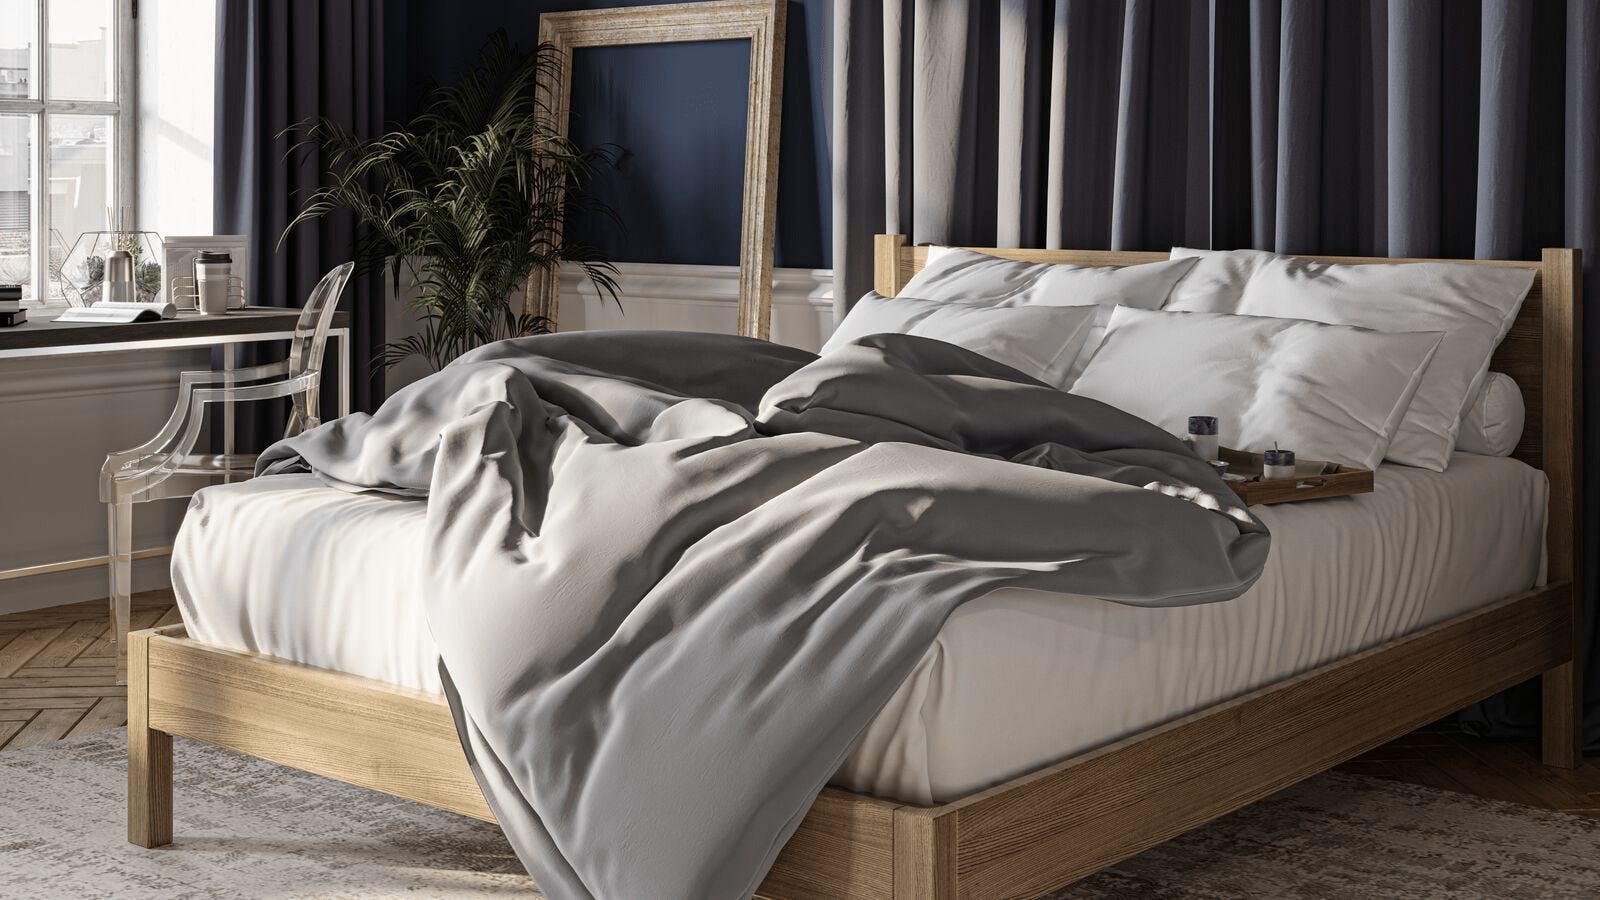 emma matras bed houten in bedroom